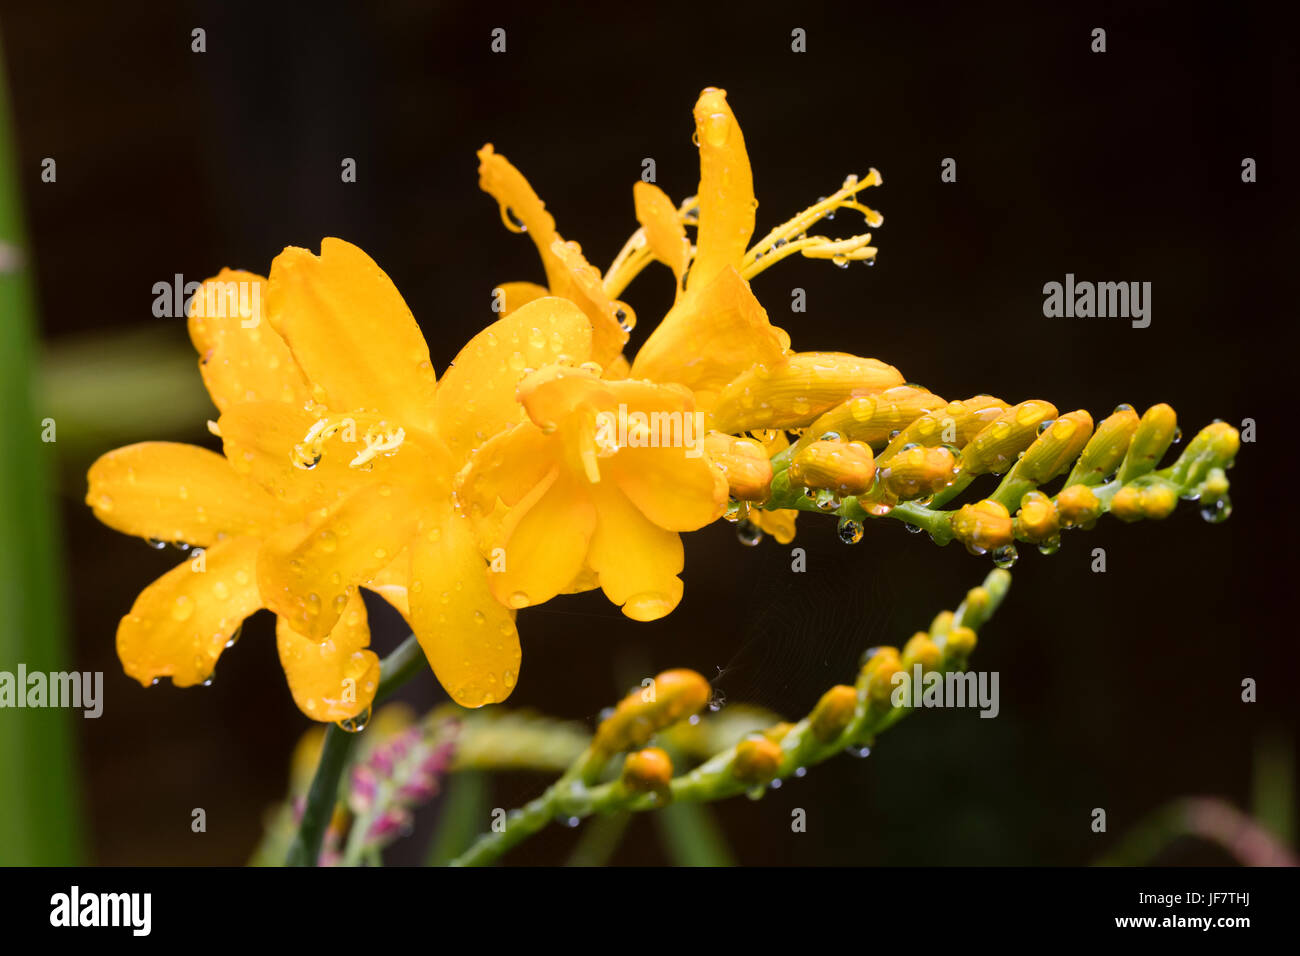 Bright yellow tubular flowers in the spike of the summer flowering Crocosmia masoniorum 'Paul's Best Yellow' Stock Photo